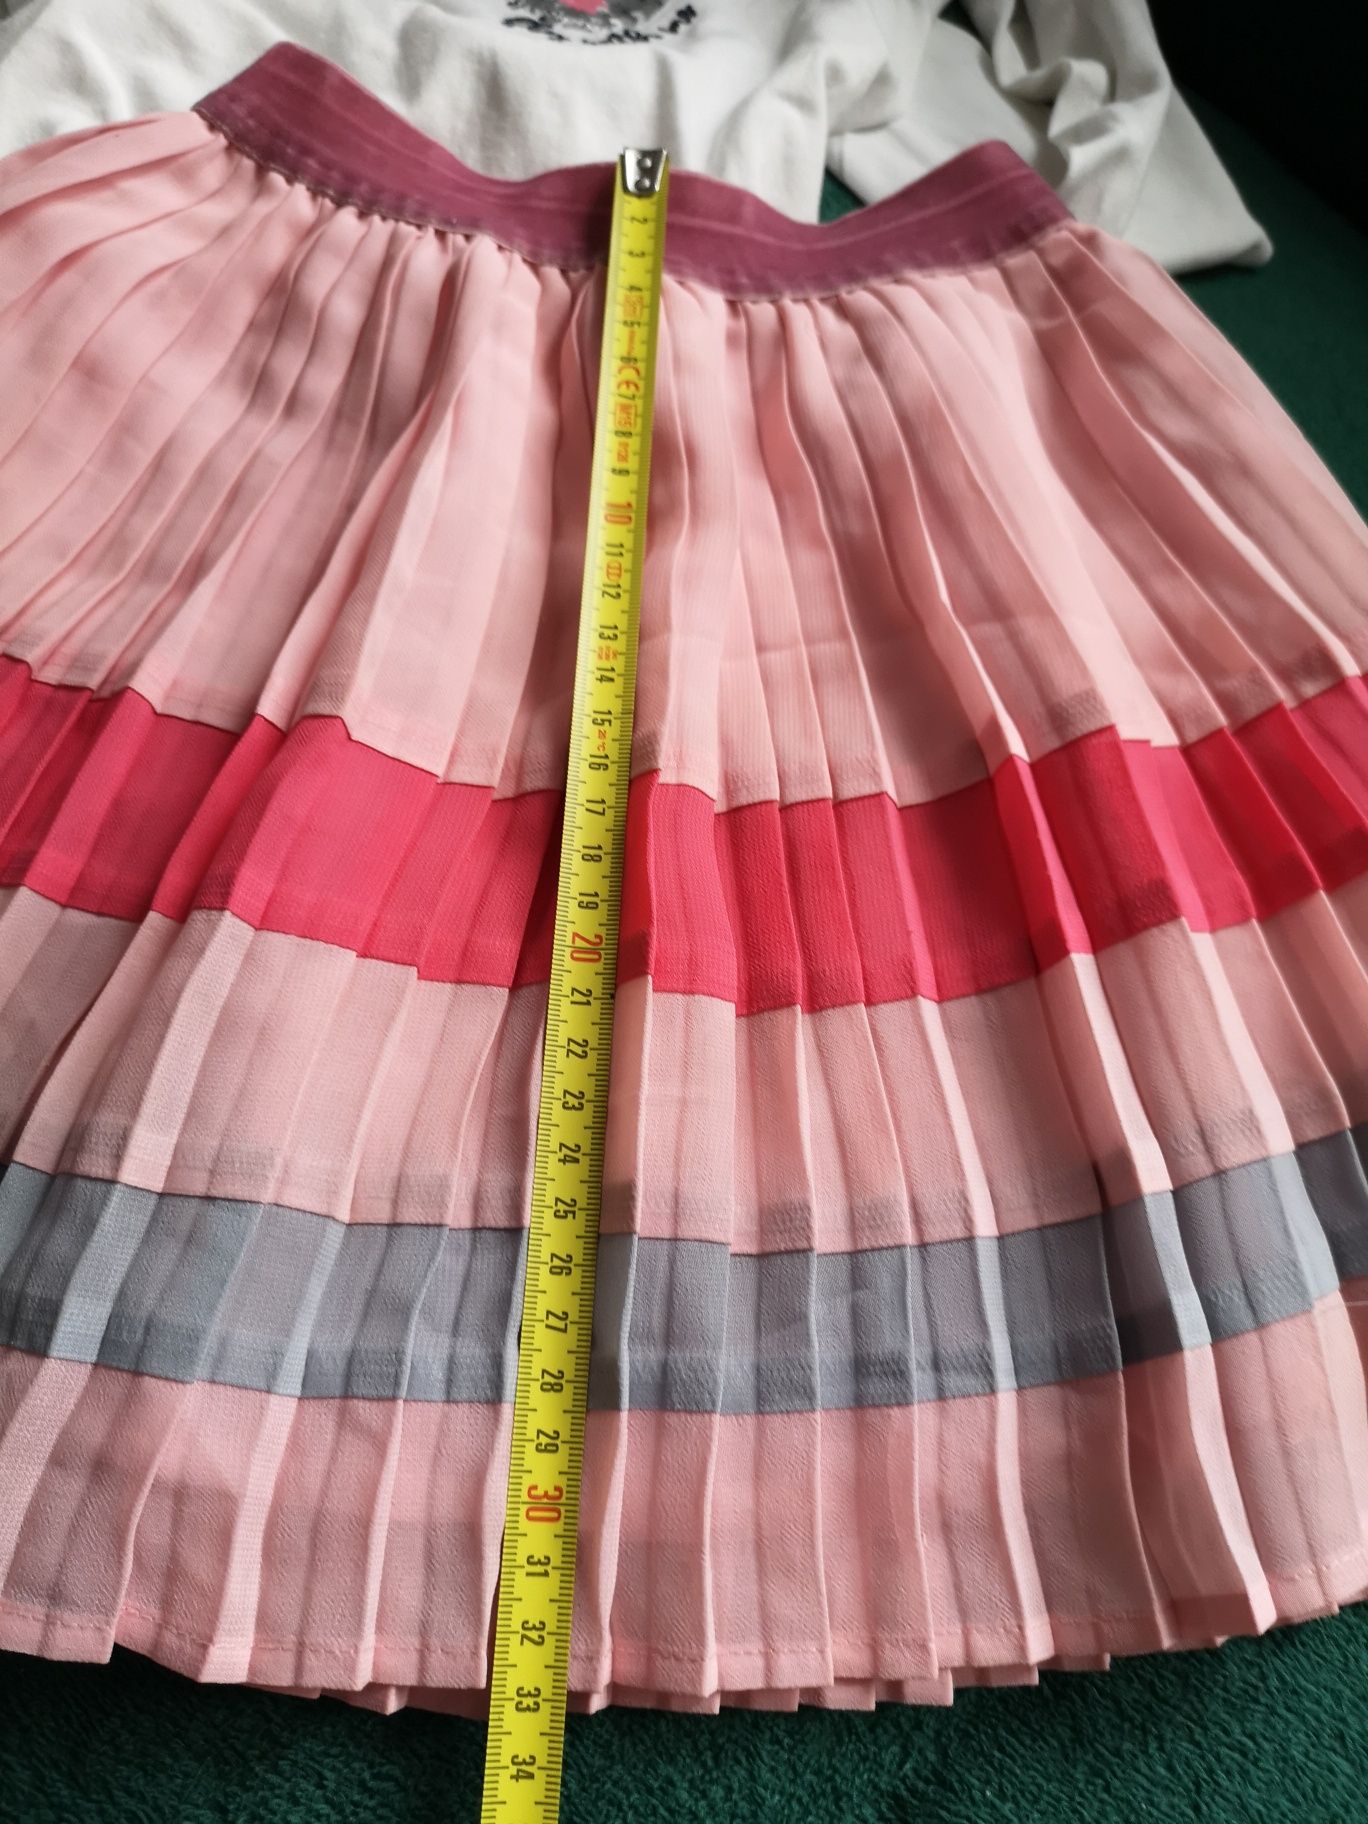 Spódniczka Next, 104-110 różowa plisowana